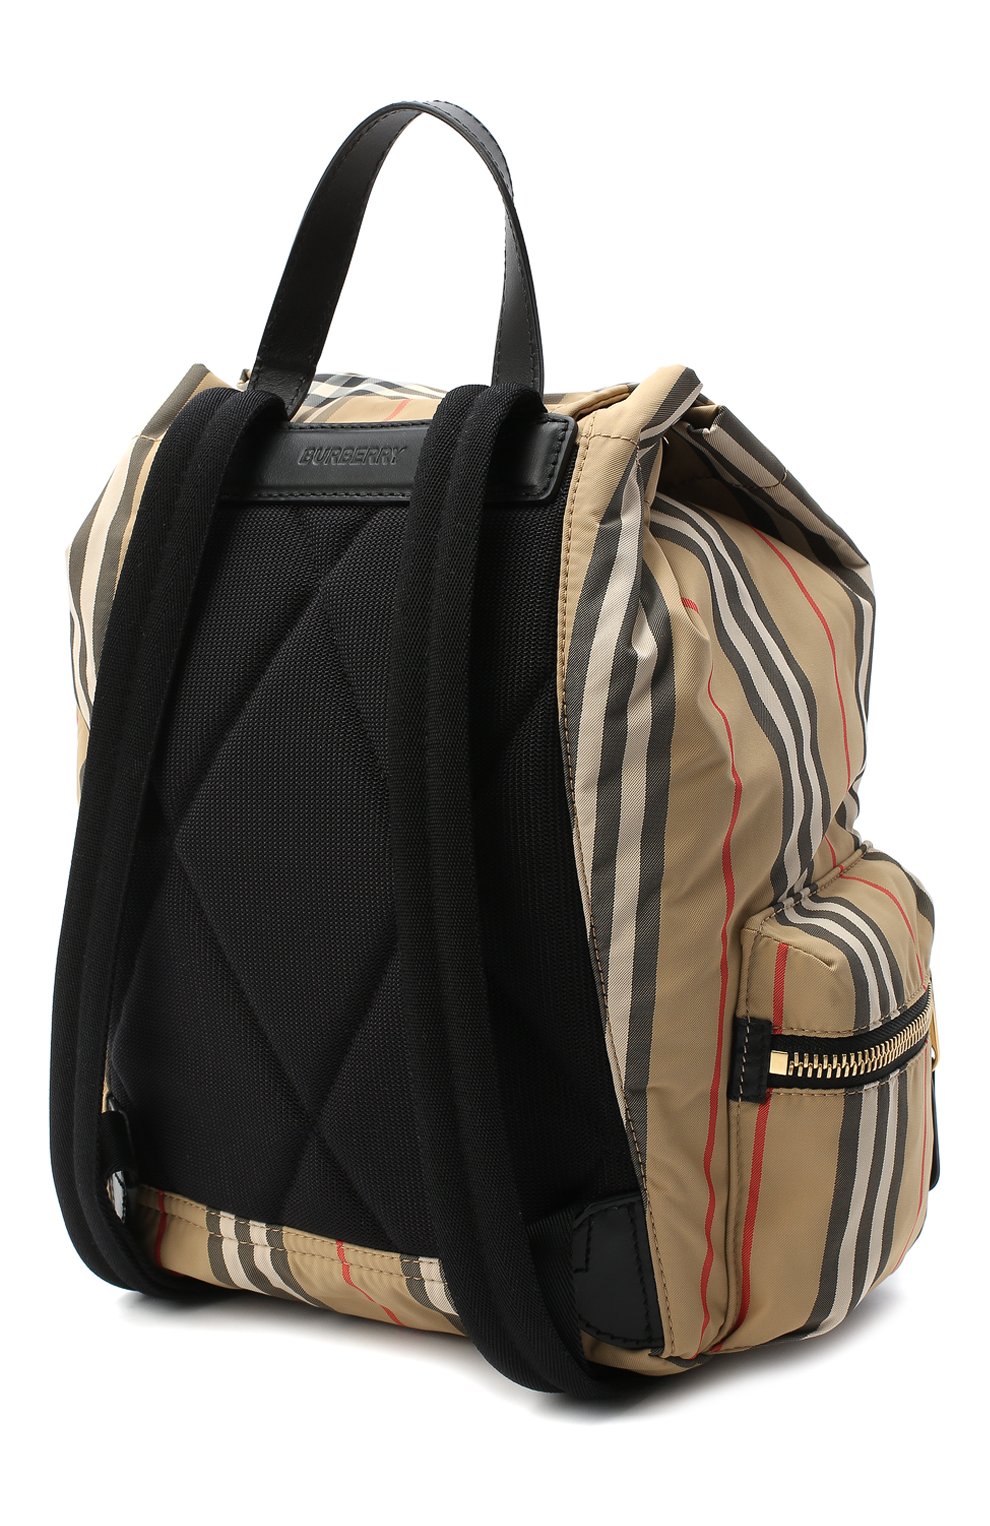 Женский рюкзак rucksack medium BURBERRY бежевого цвета, арт. 8032709 | Фото 3 (Размер: medium; Ремень/цепочка: На ремешке; Материал: Текстиль)